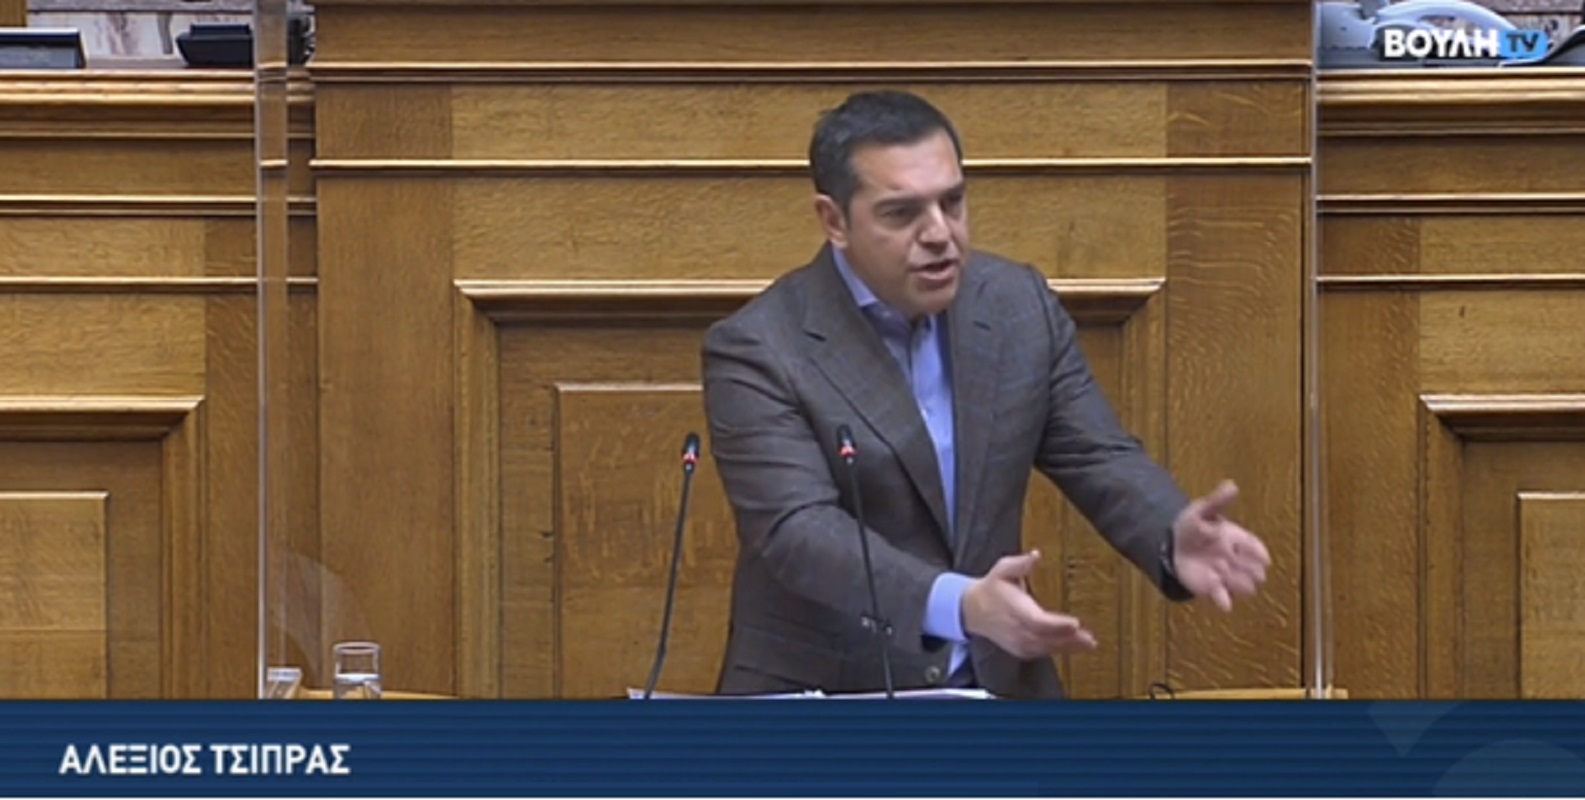 Αλ. Τσίπρας: Γίνε εσύ ο ΣΥΡΙΖΑ σήμερα - Πάρε την Ελλάδα στα χέρια σου αύριο